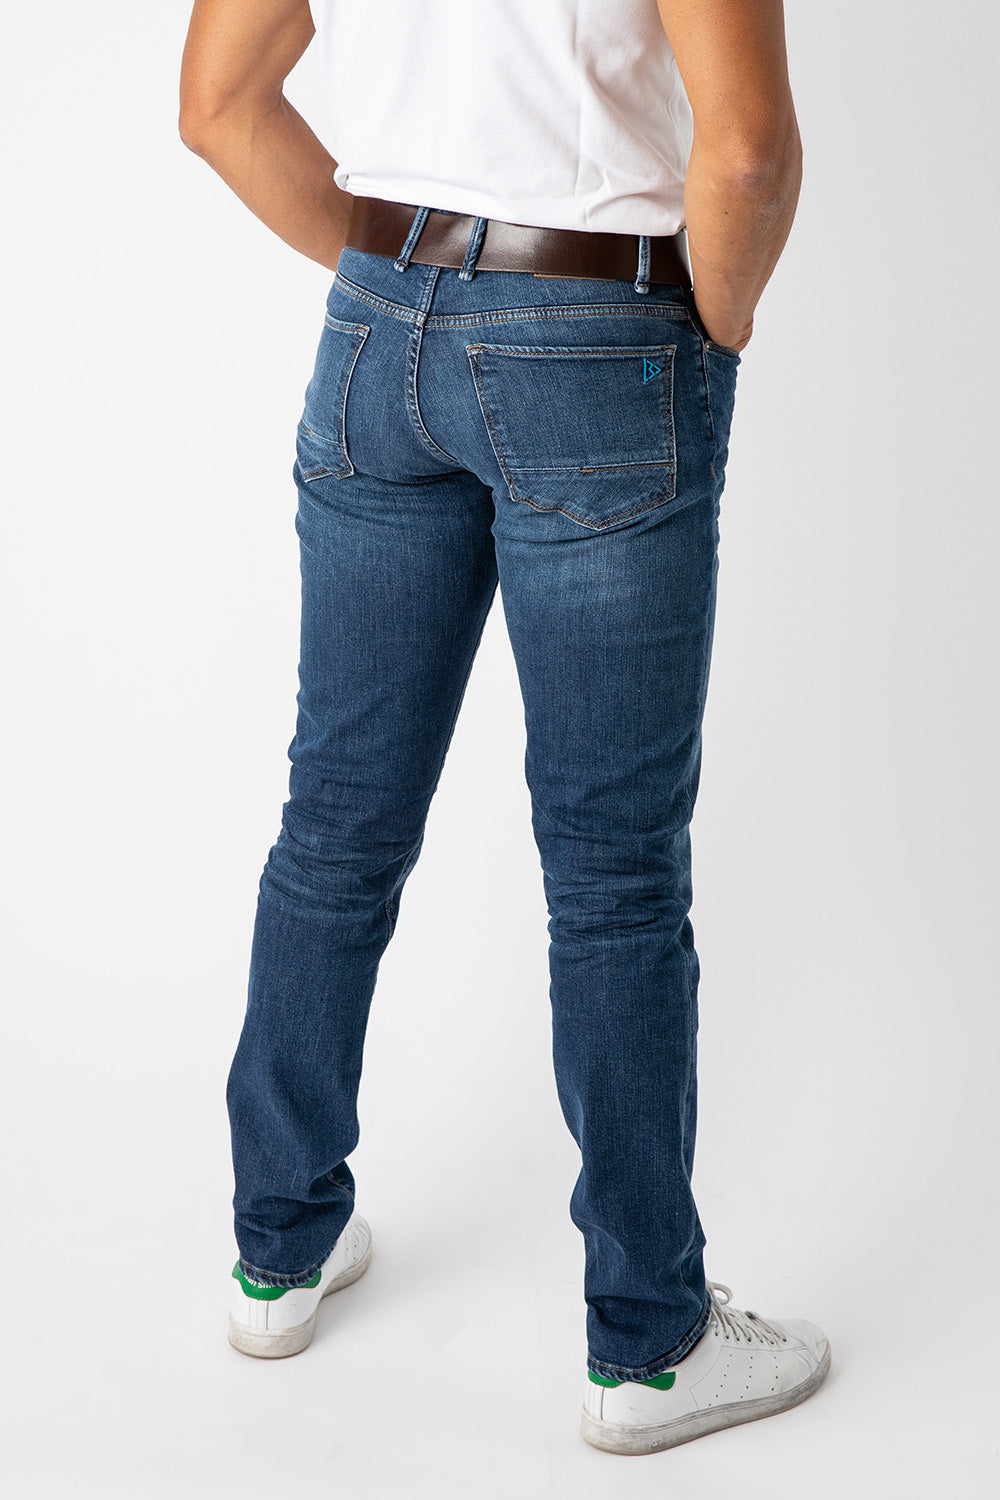 Quel jean pour un homme musclé avec de grosses cuisses - LeBeauJean.fr